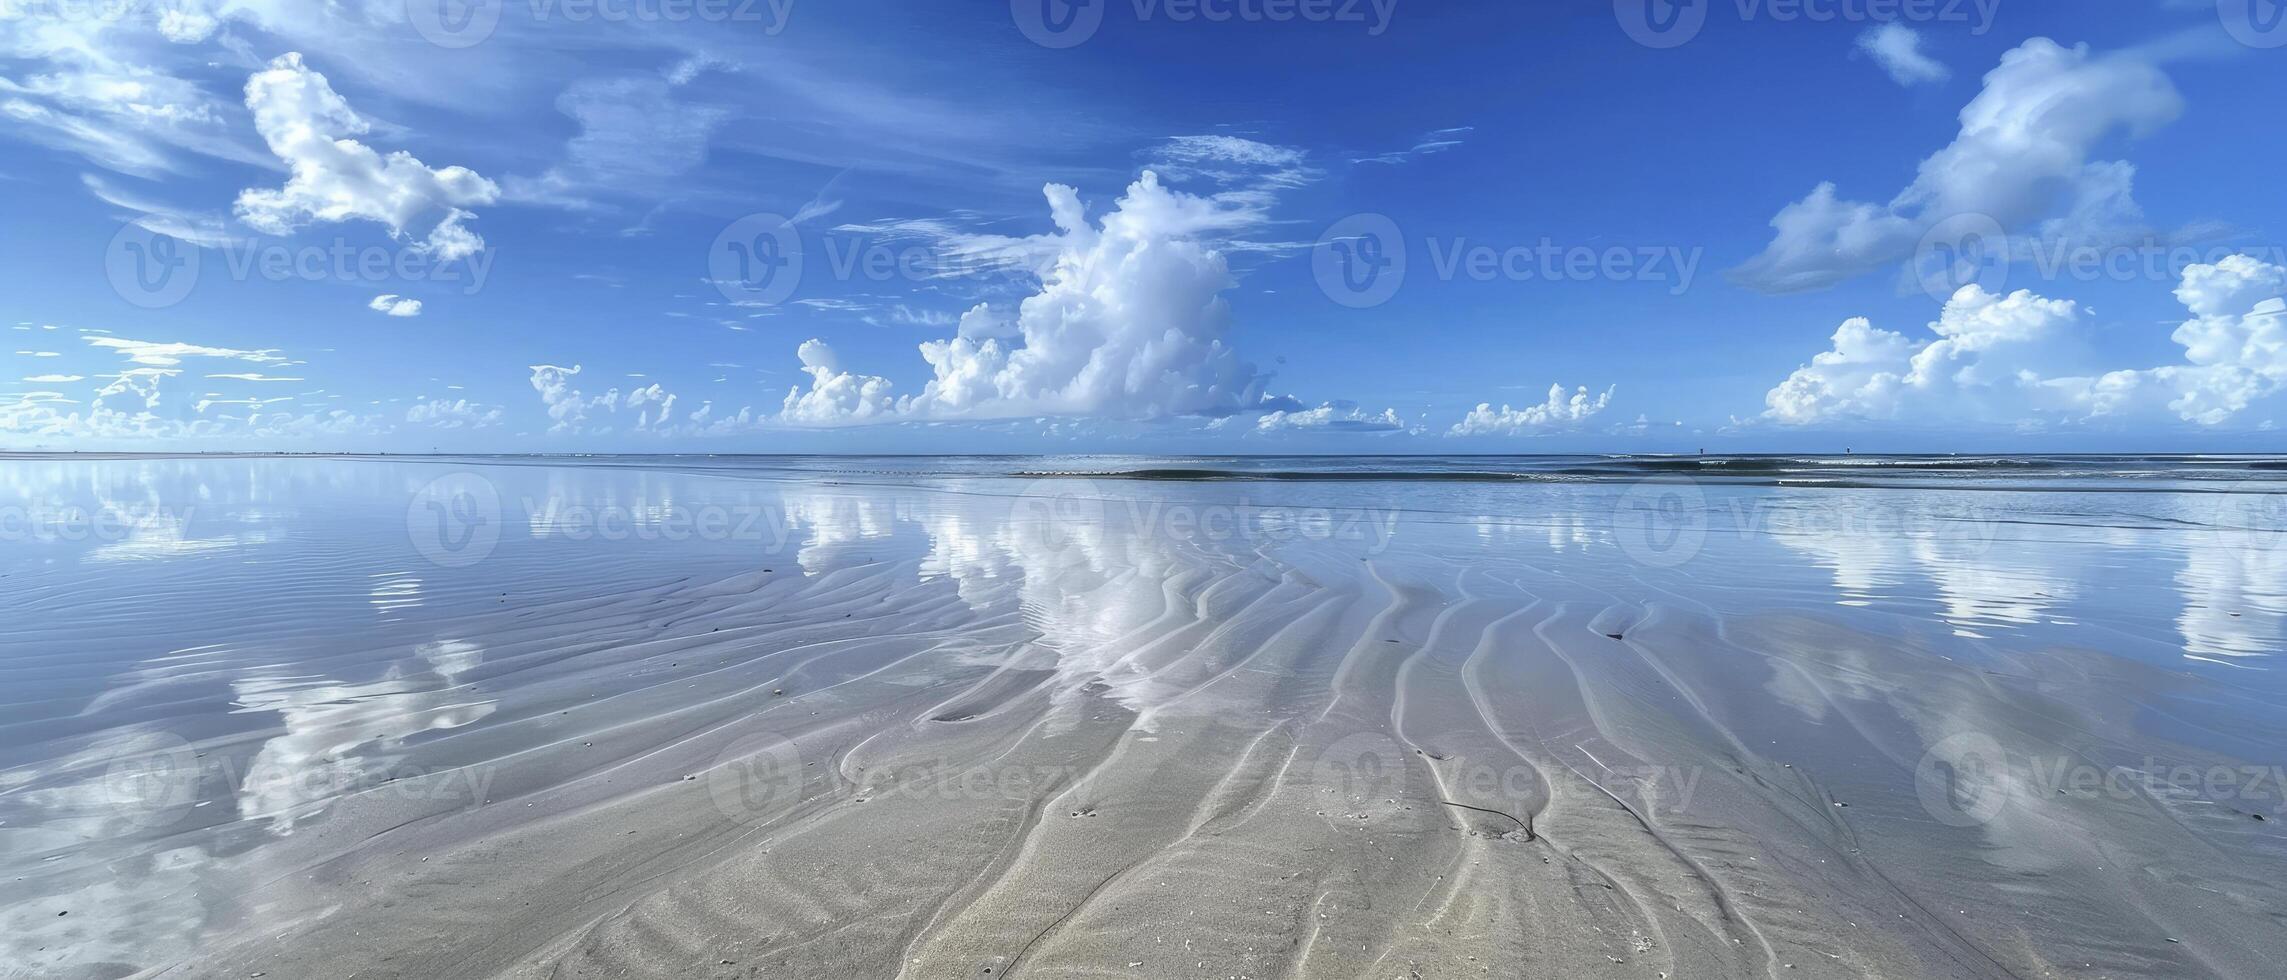 arena, océano, y cielo foto